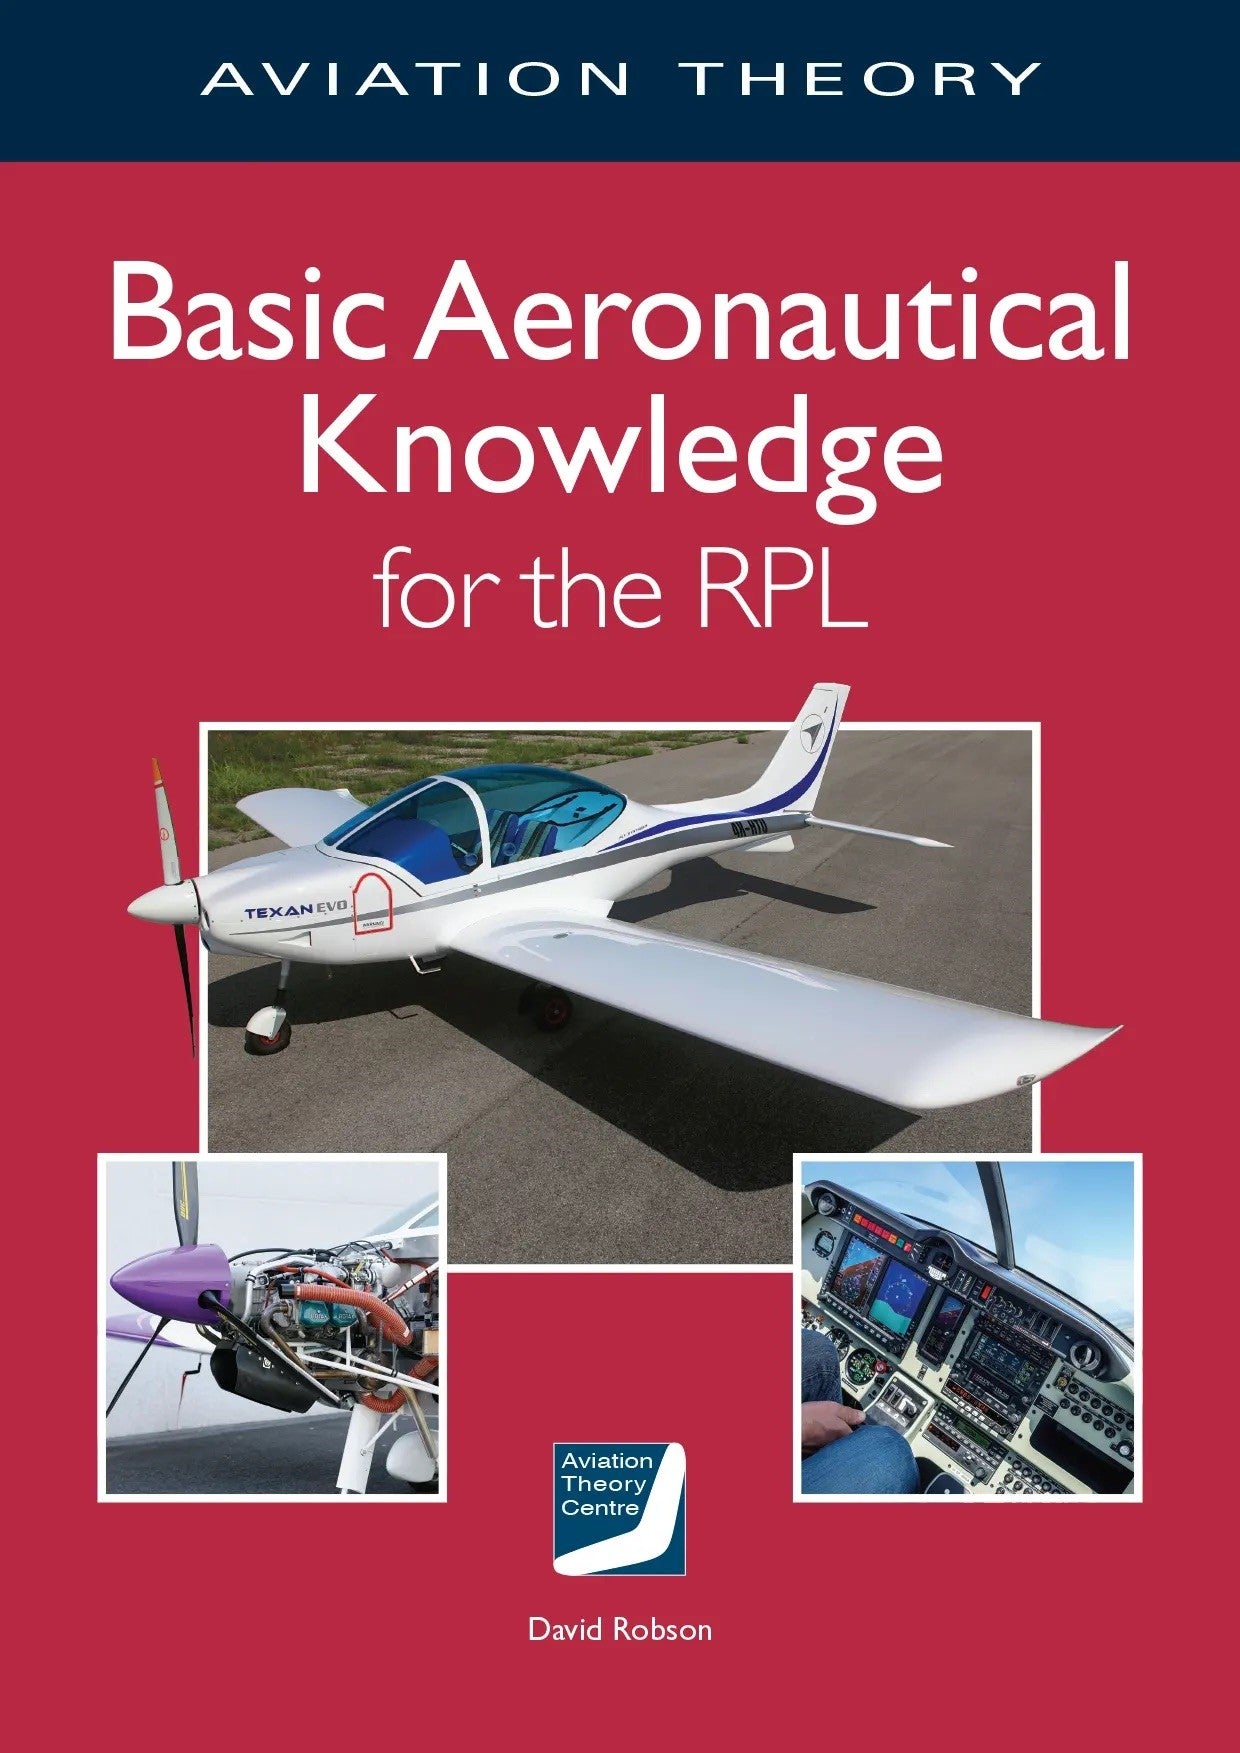 ATC - Basic Aeronautical Knowledge for the RPL